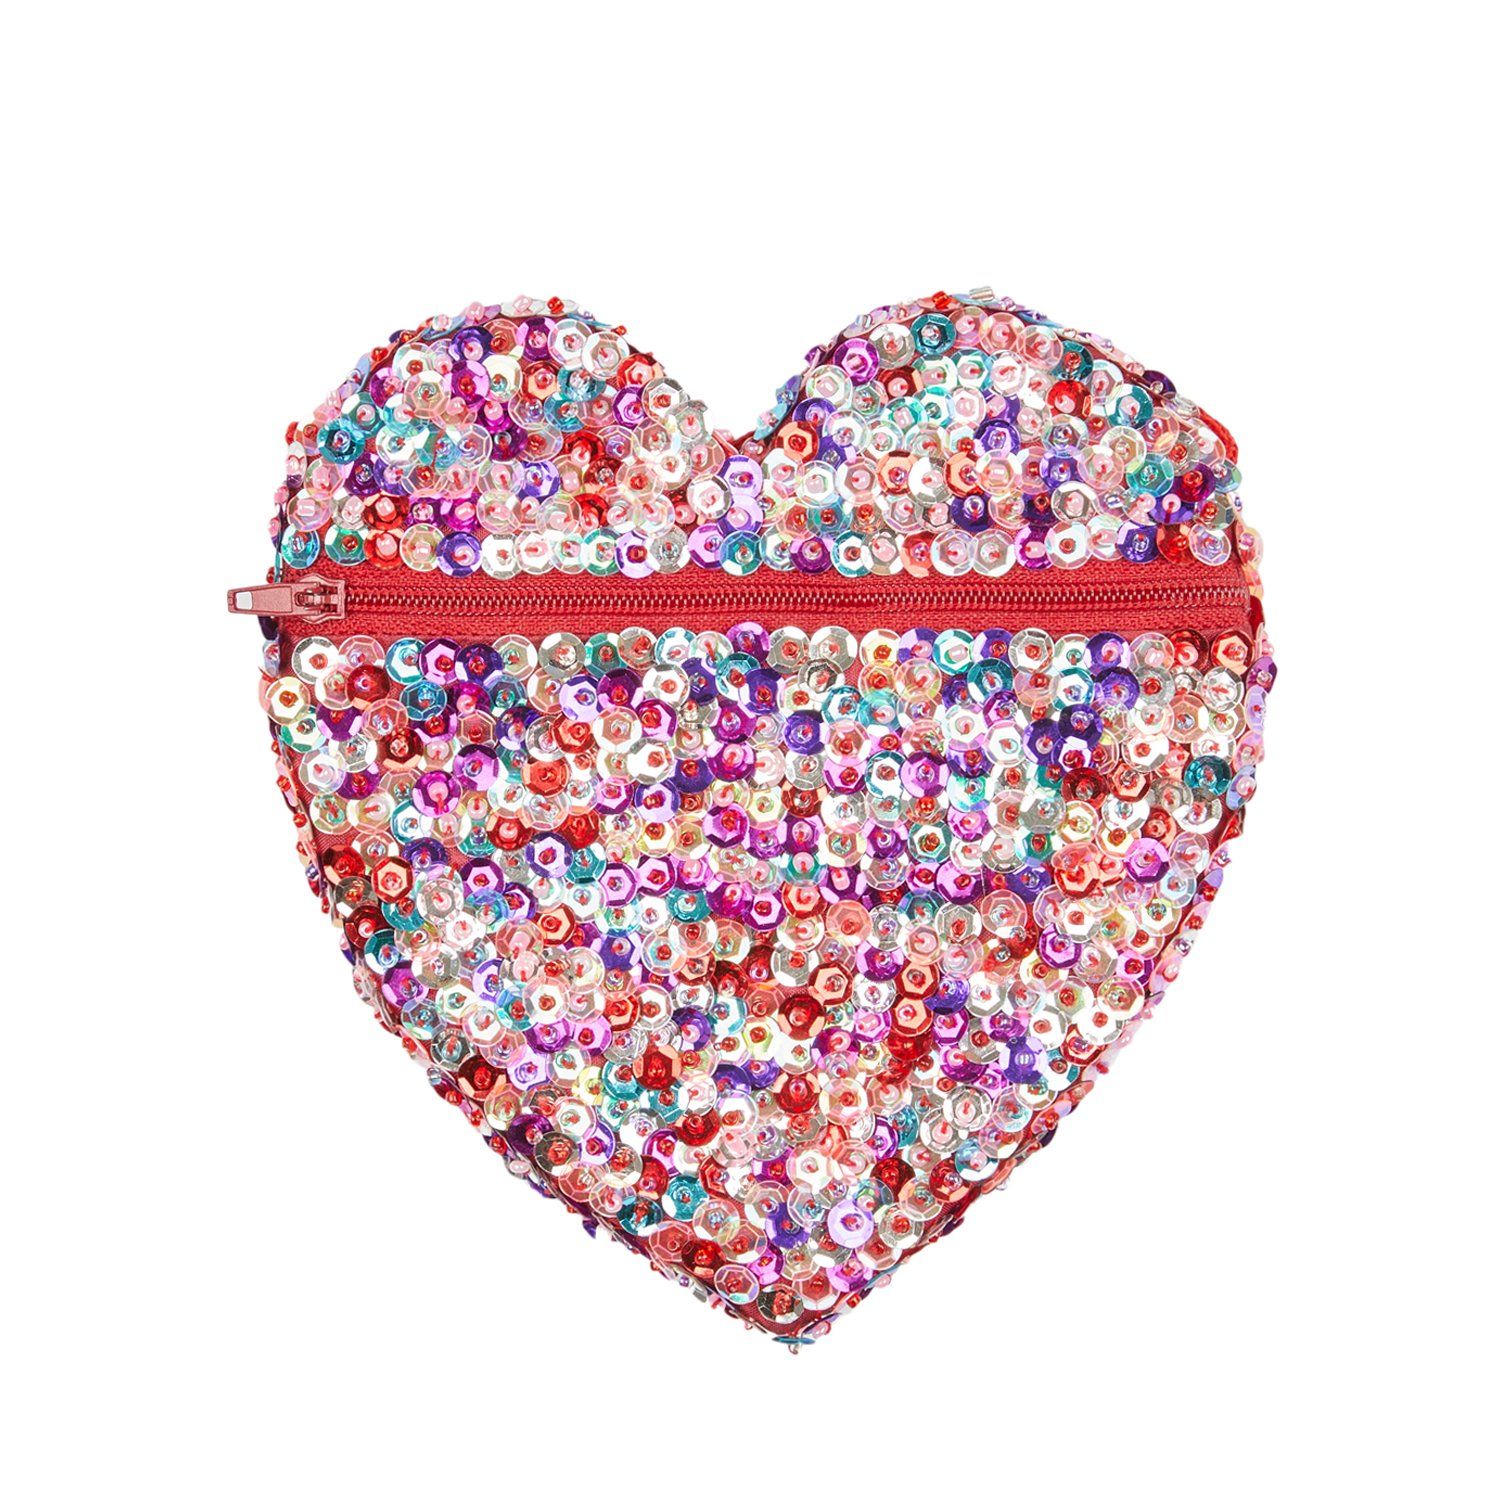 Children's Small Sparkly Sequin Heart Purse - Love-Shu-Shi